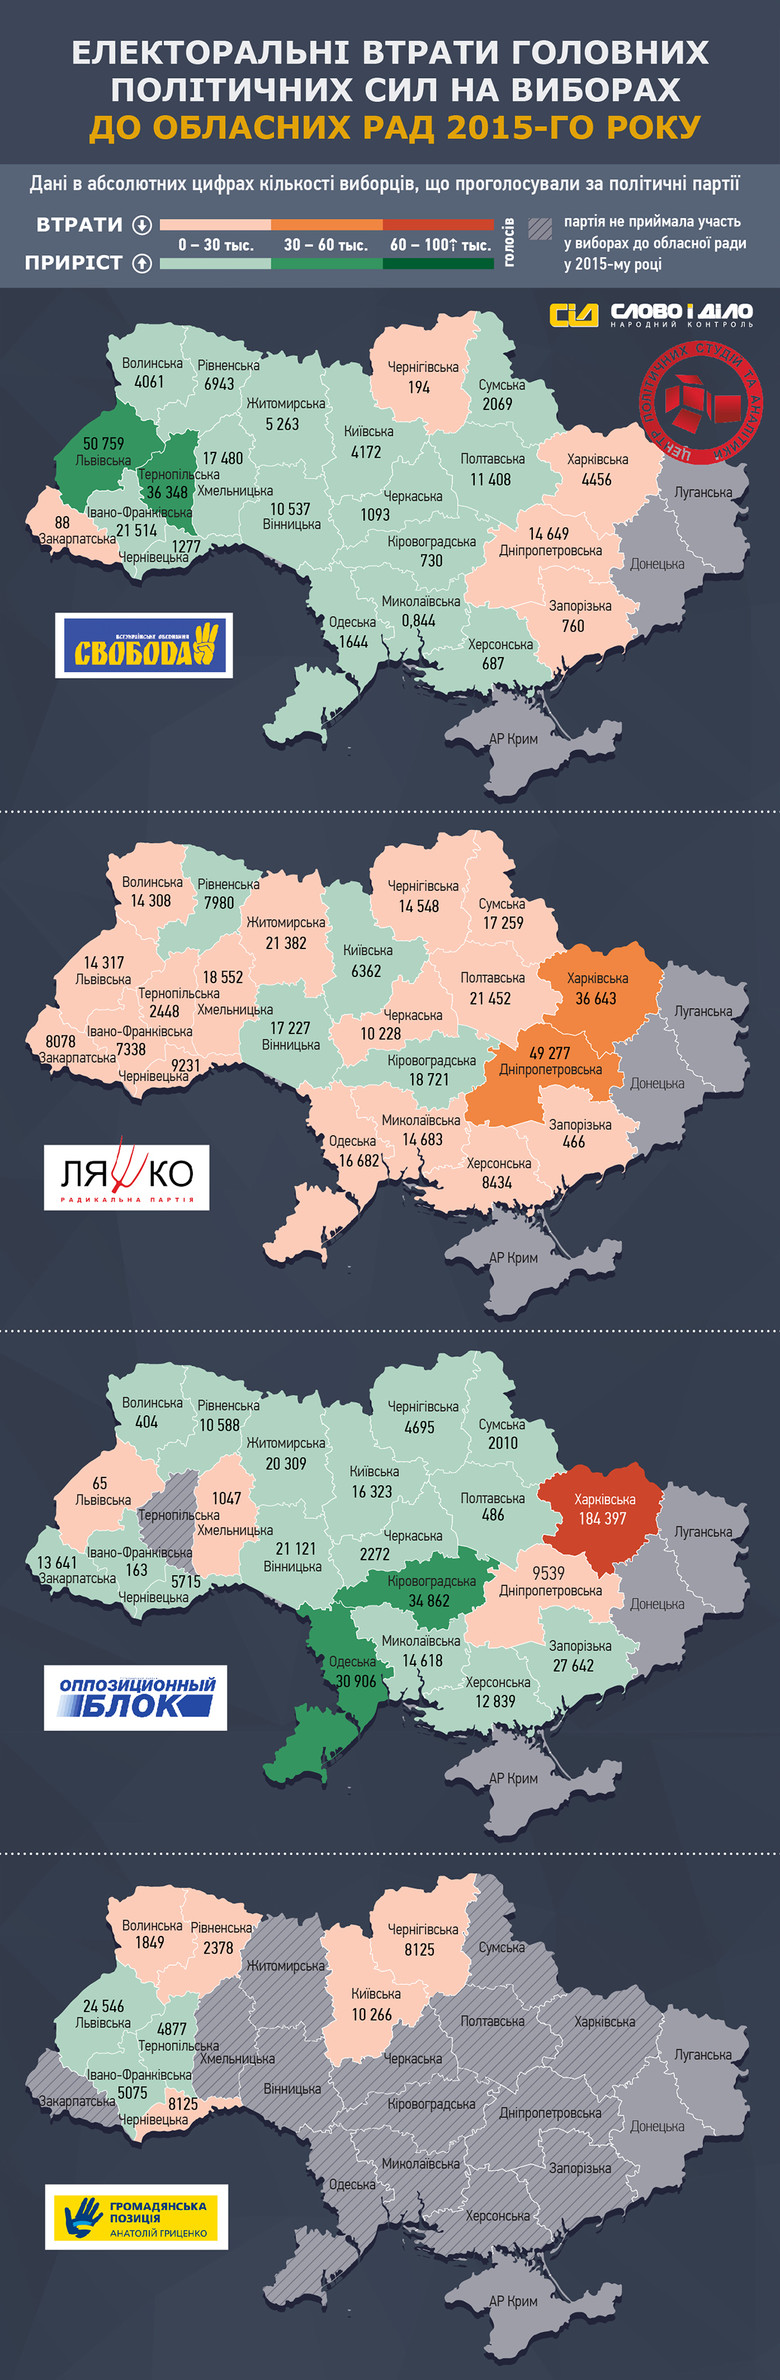 «Слово і Діло» спільно з Центром політичних студій та аналітики провело аналіз місцевих виборів у регіонах України щодо кількості втрат виборців політичними партіями в облрадах.